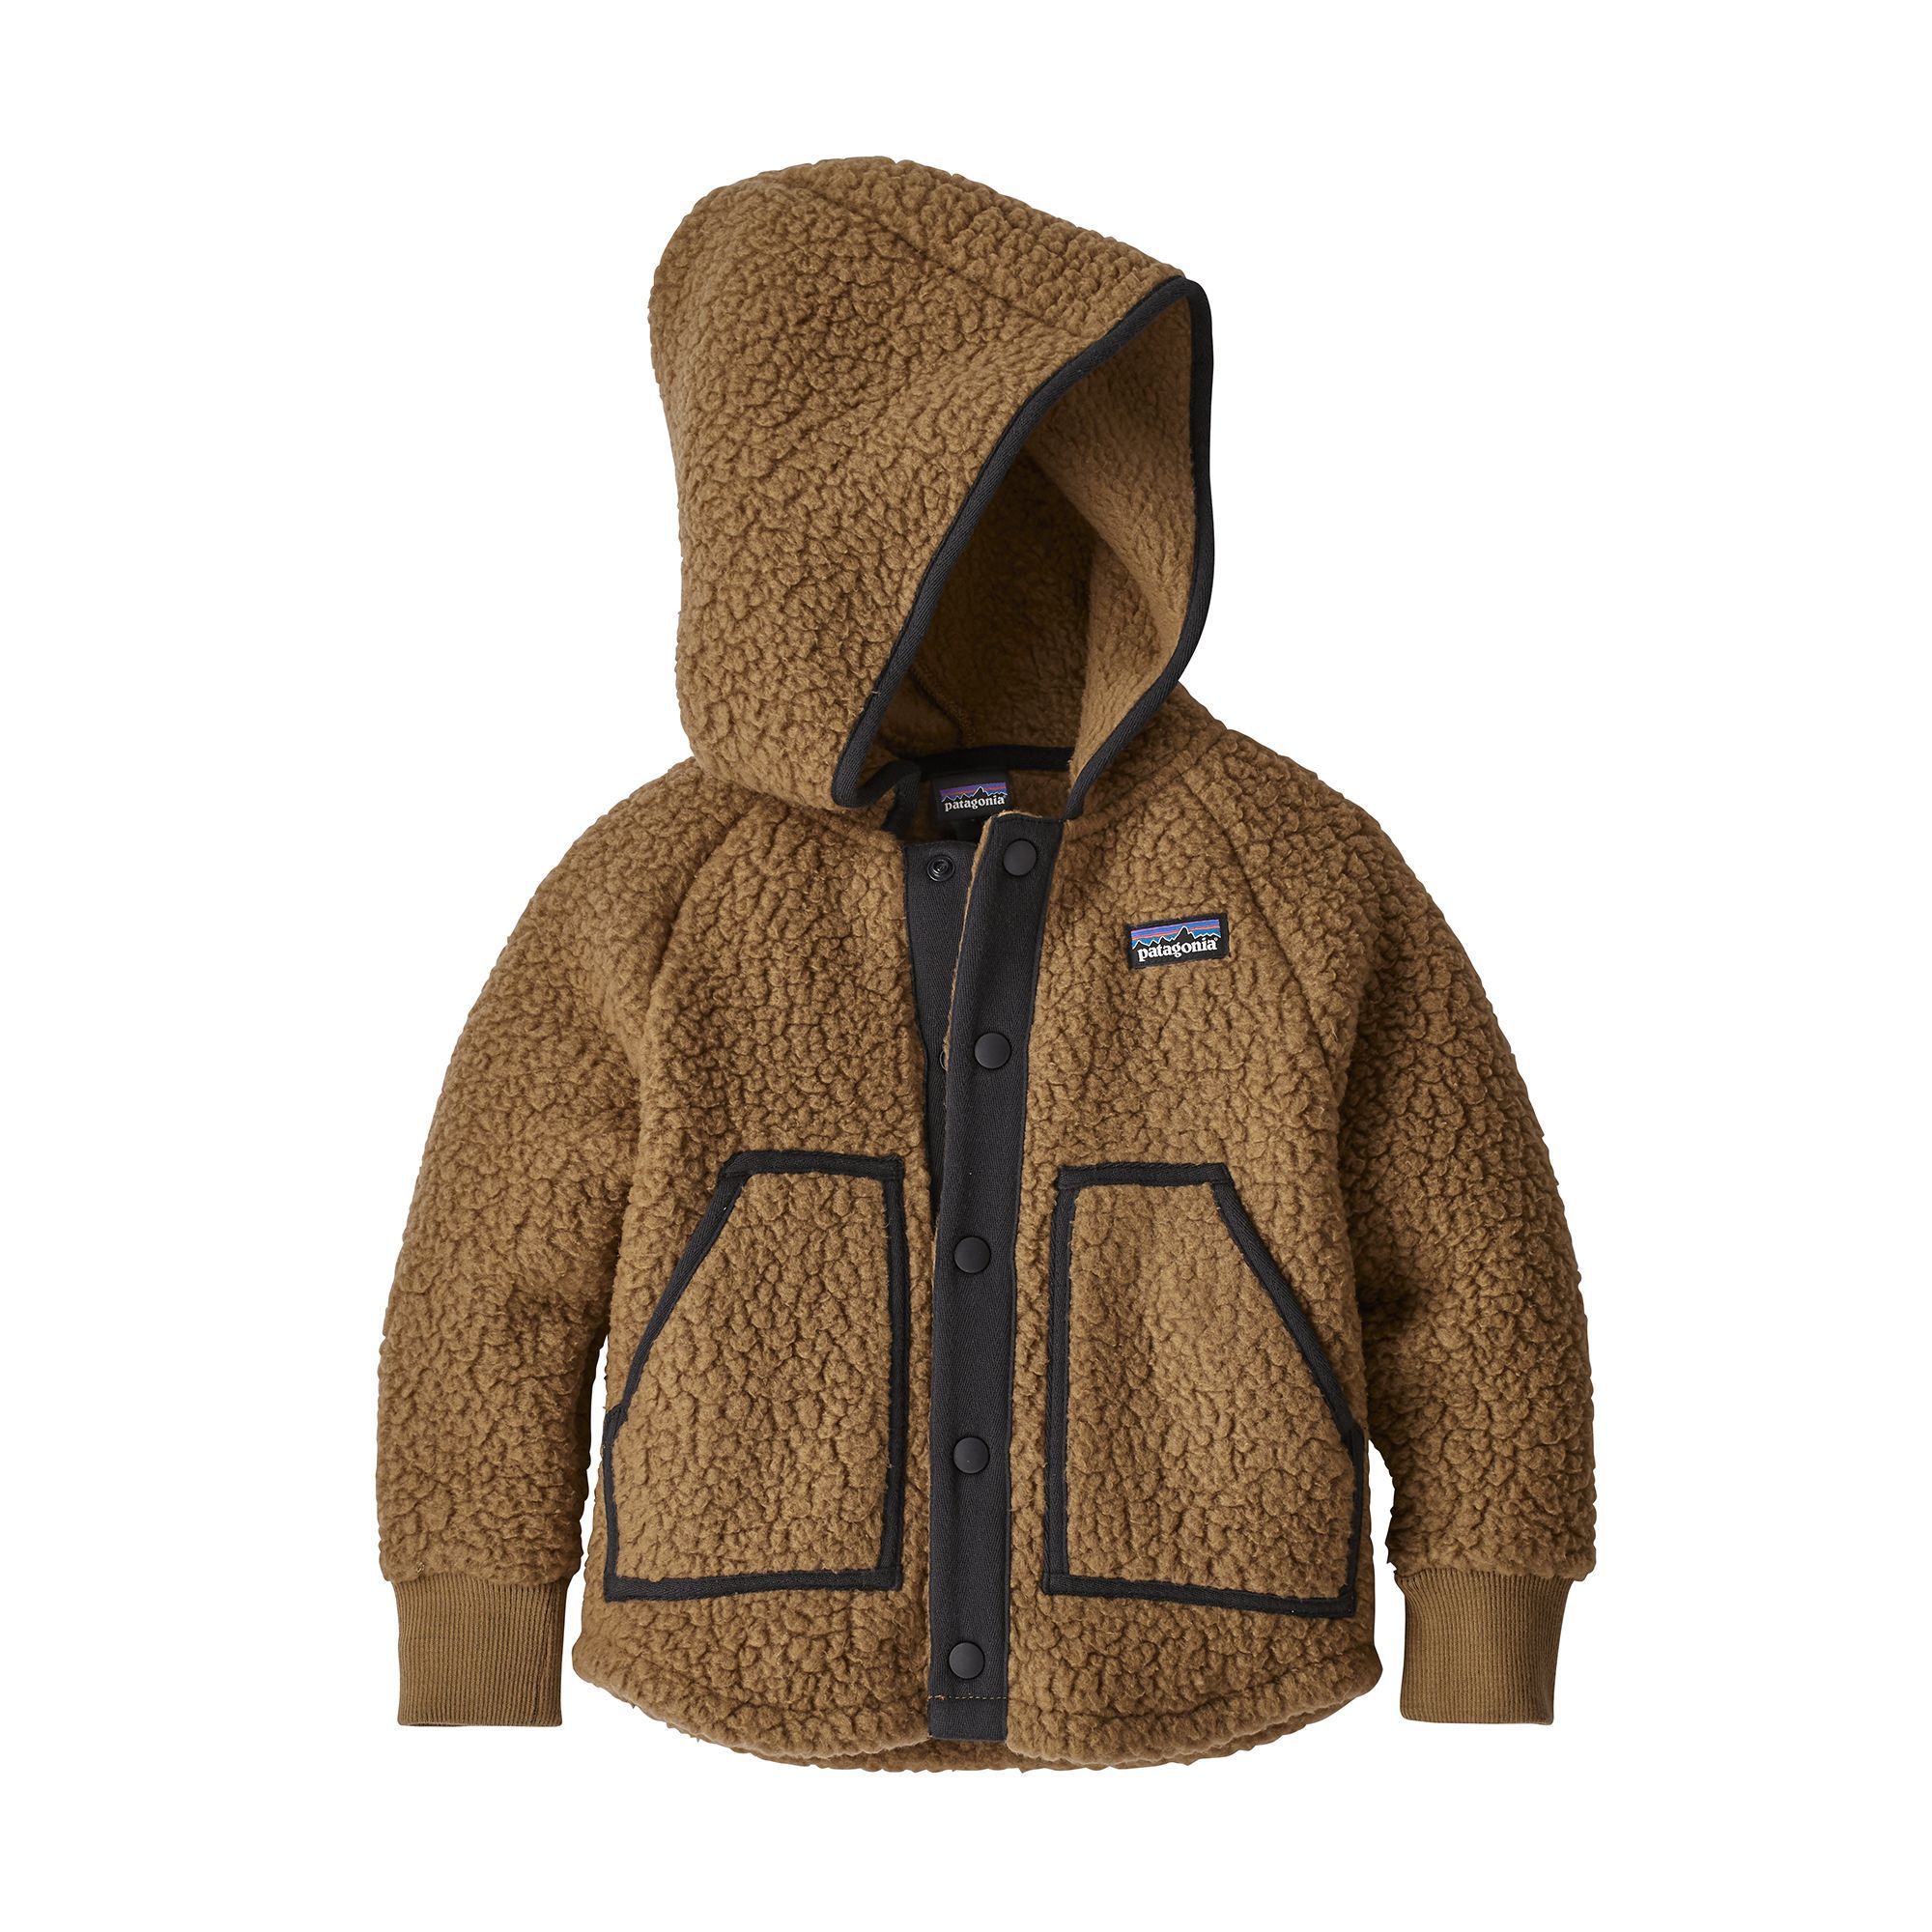 Patagonia Baby Fleece Jacket